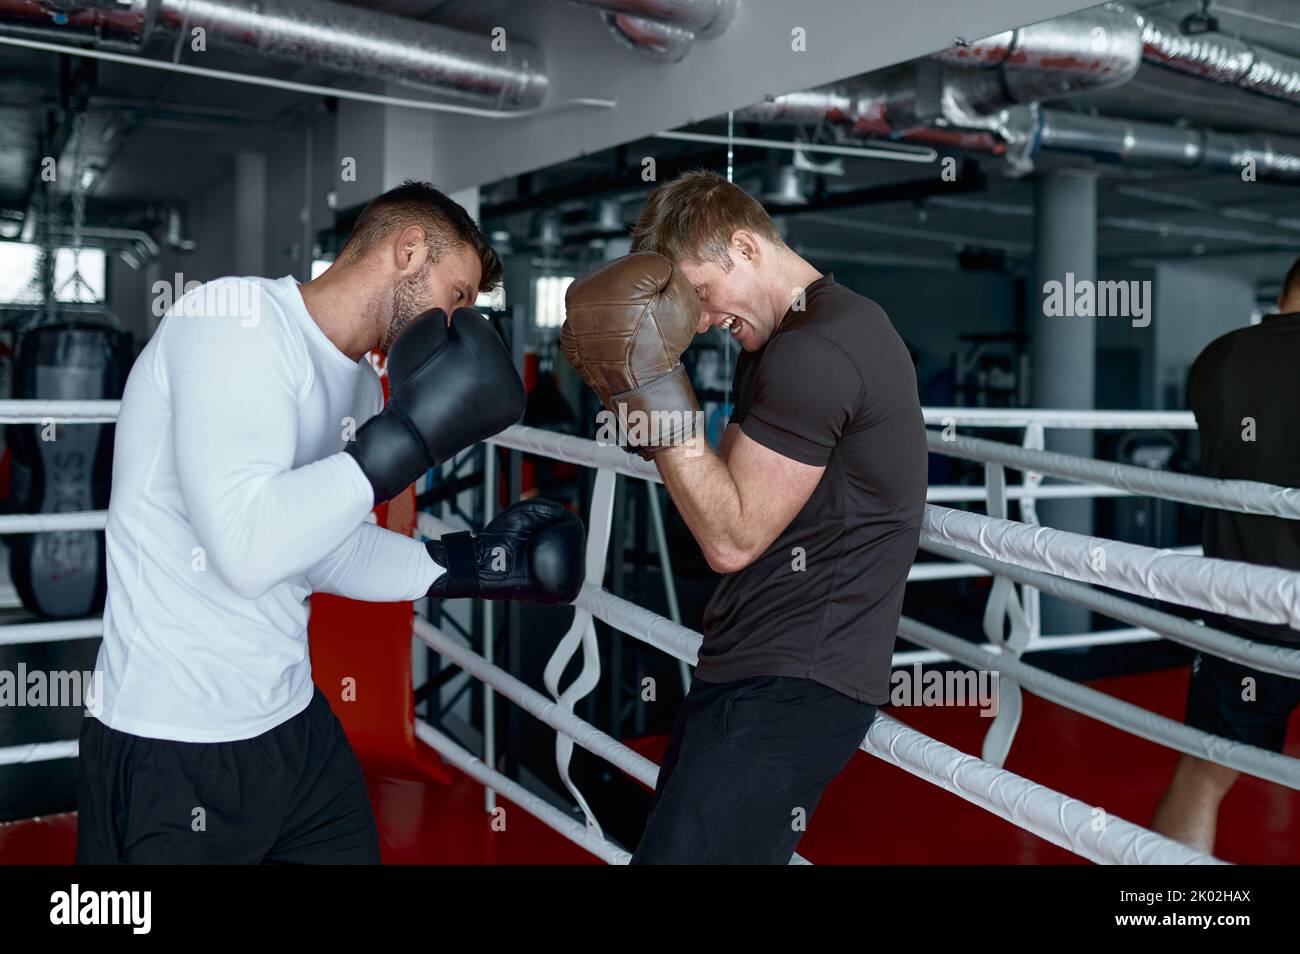 Dos compañeros sparring en guantes de boxeo practican patadas Foto de stock